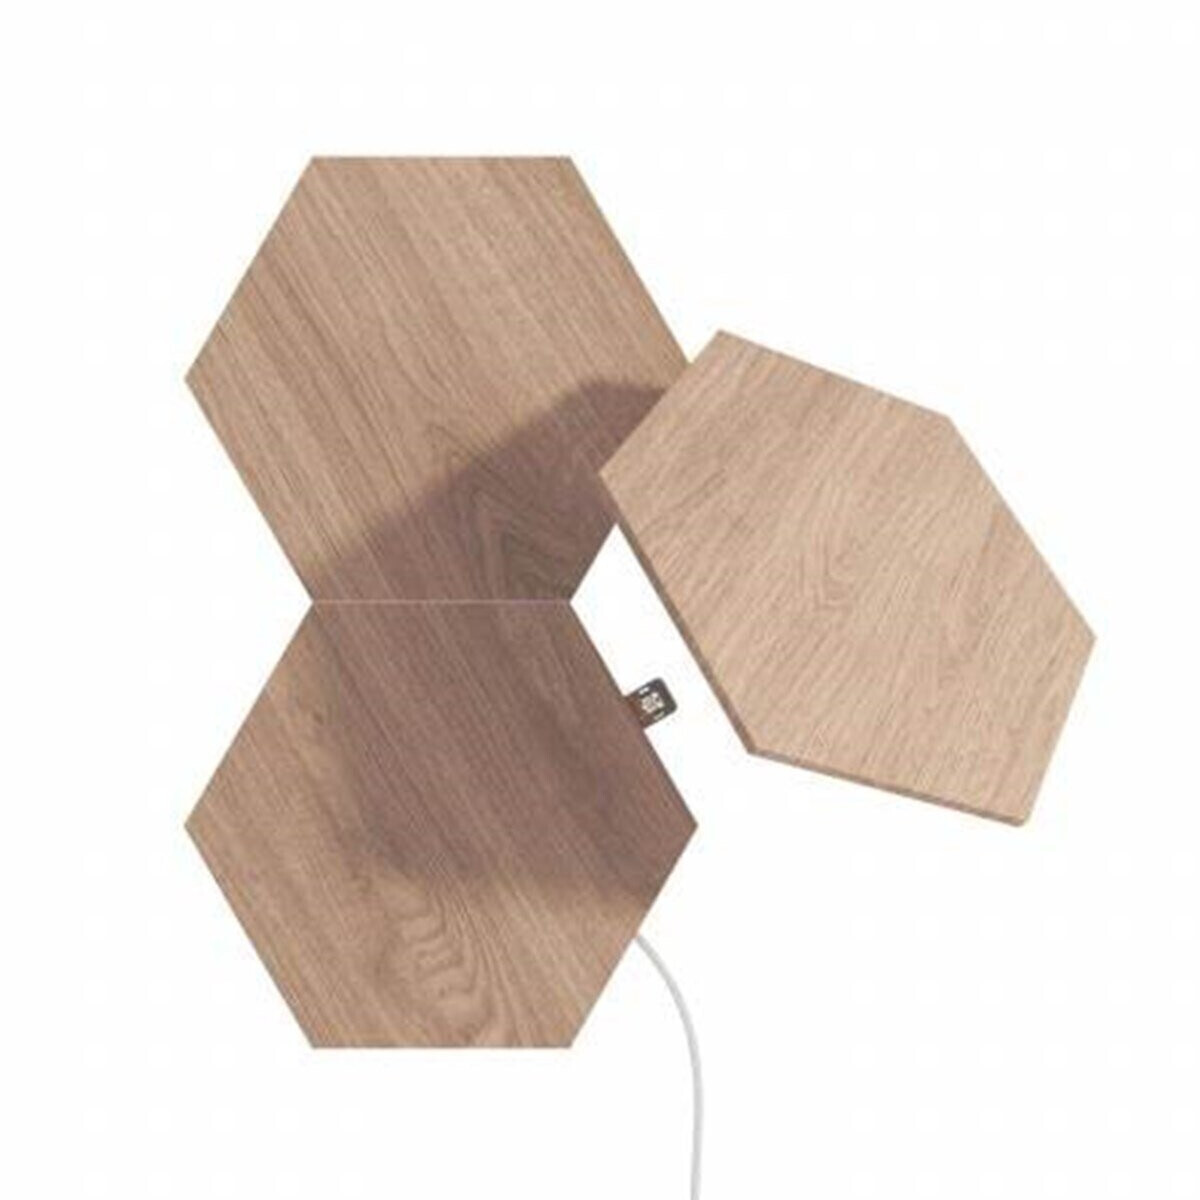 Nanoleaf Elements Hexagons Wood Look Erweiterungsset 3 Licht-Panele  (NL52-E-0001HB-3PK) ab 59,99 € | Preisvergleich bei